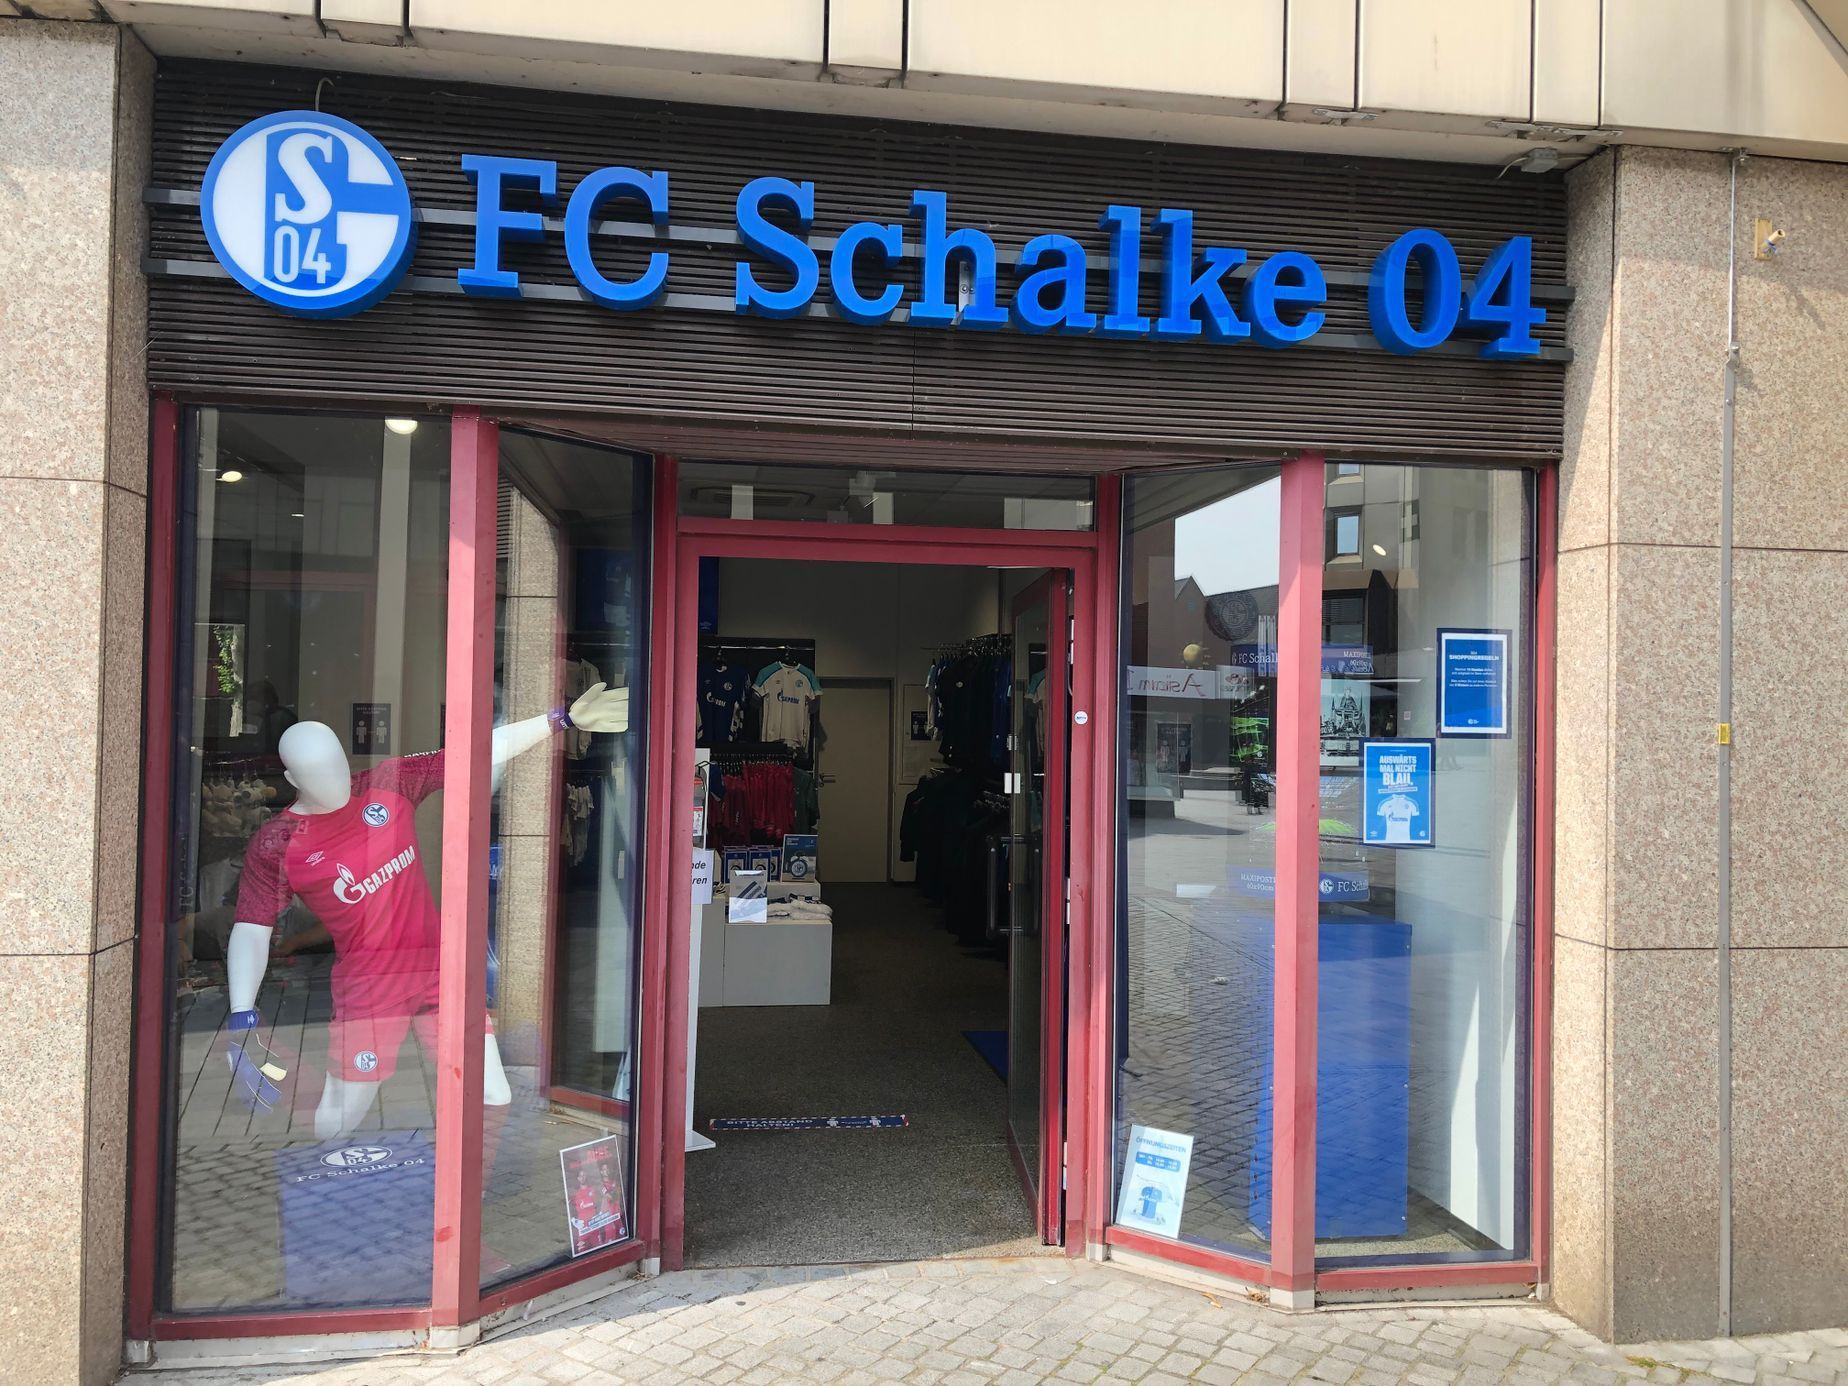 Chloubou Gelsenkirchenu a vášní jeho obyvatel je místní fotbalový klub Schalke 04. Sedminásobný německý mistr a vítěz Poháru UEFA v roce 1997. Letos ale Schalke spadlo do druhé ligy.